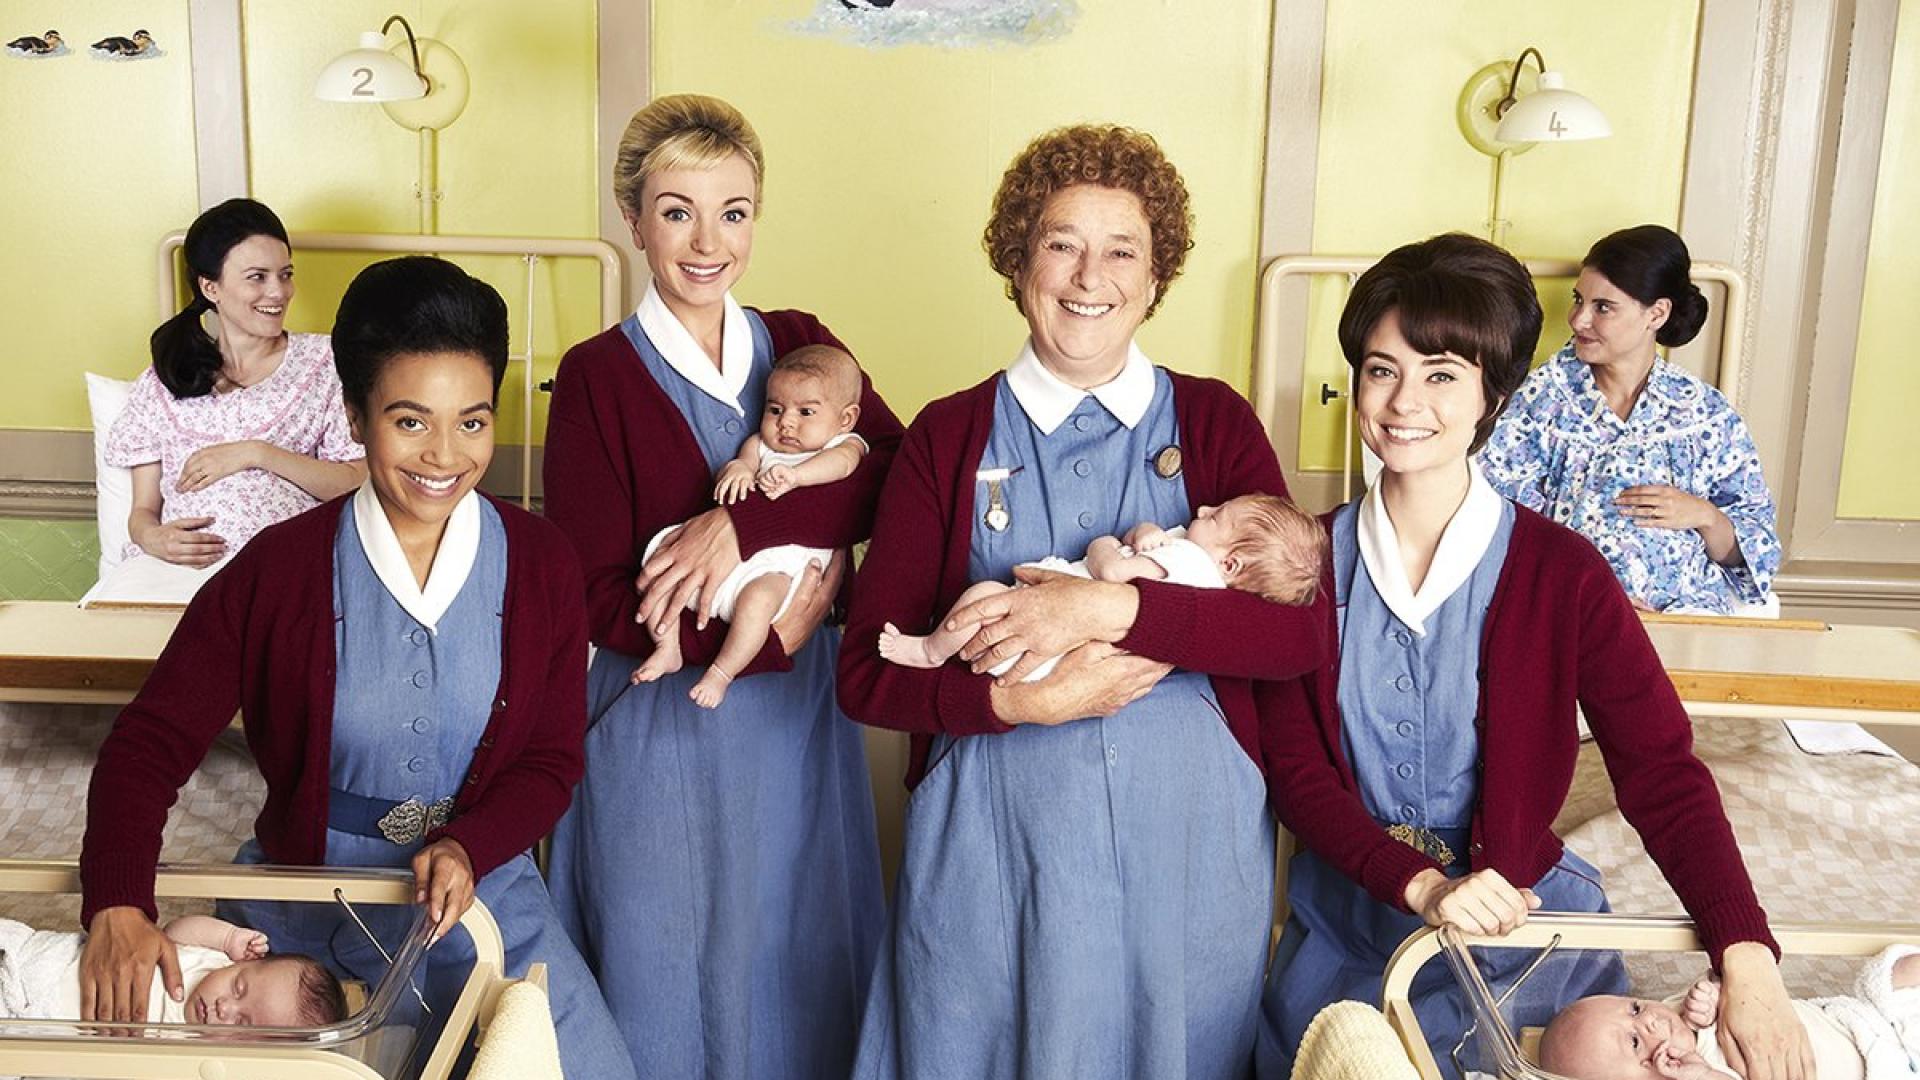 Call the Midwife' Recap: Season 9 Episode 1